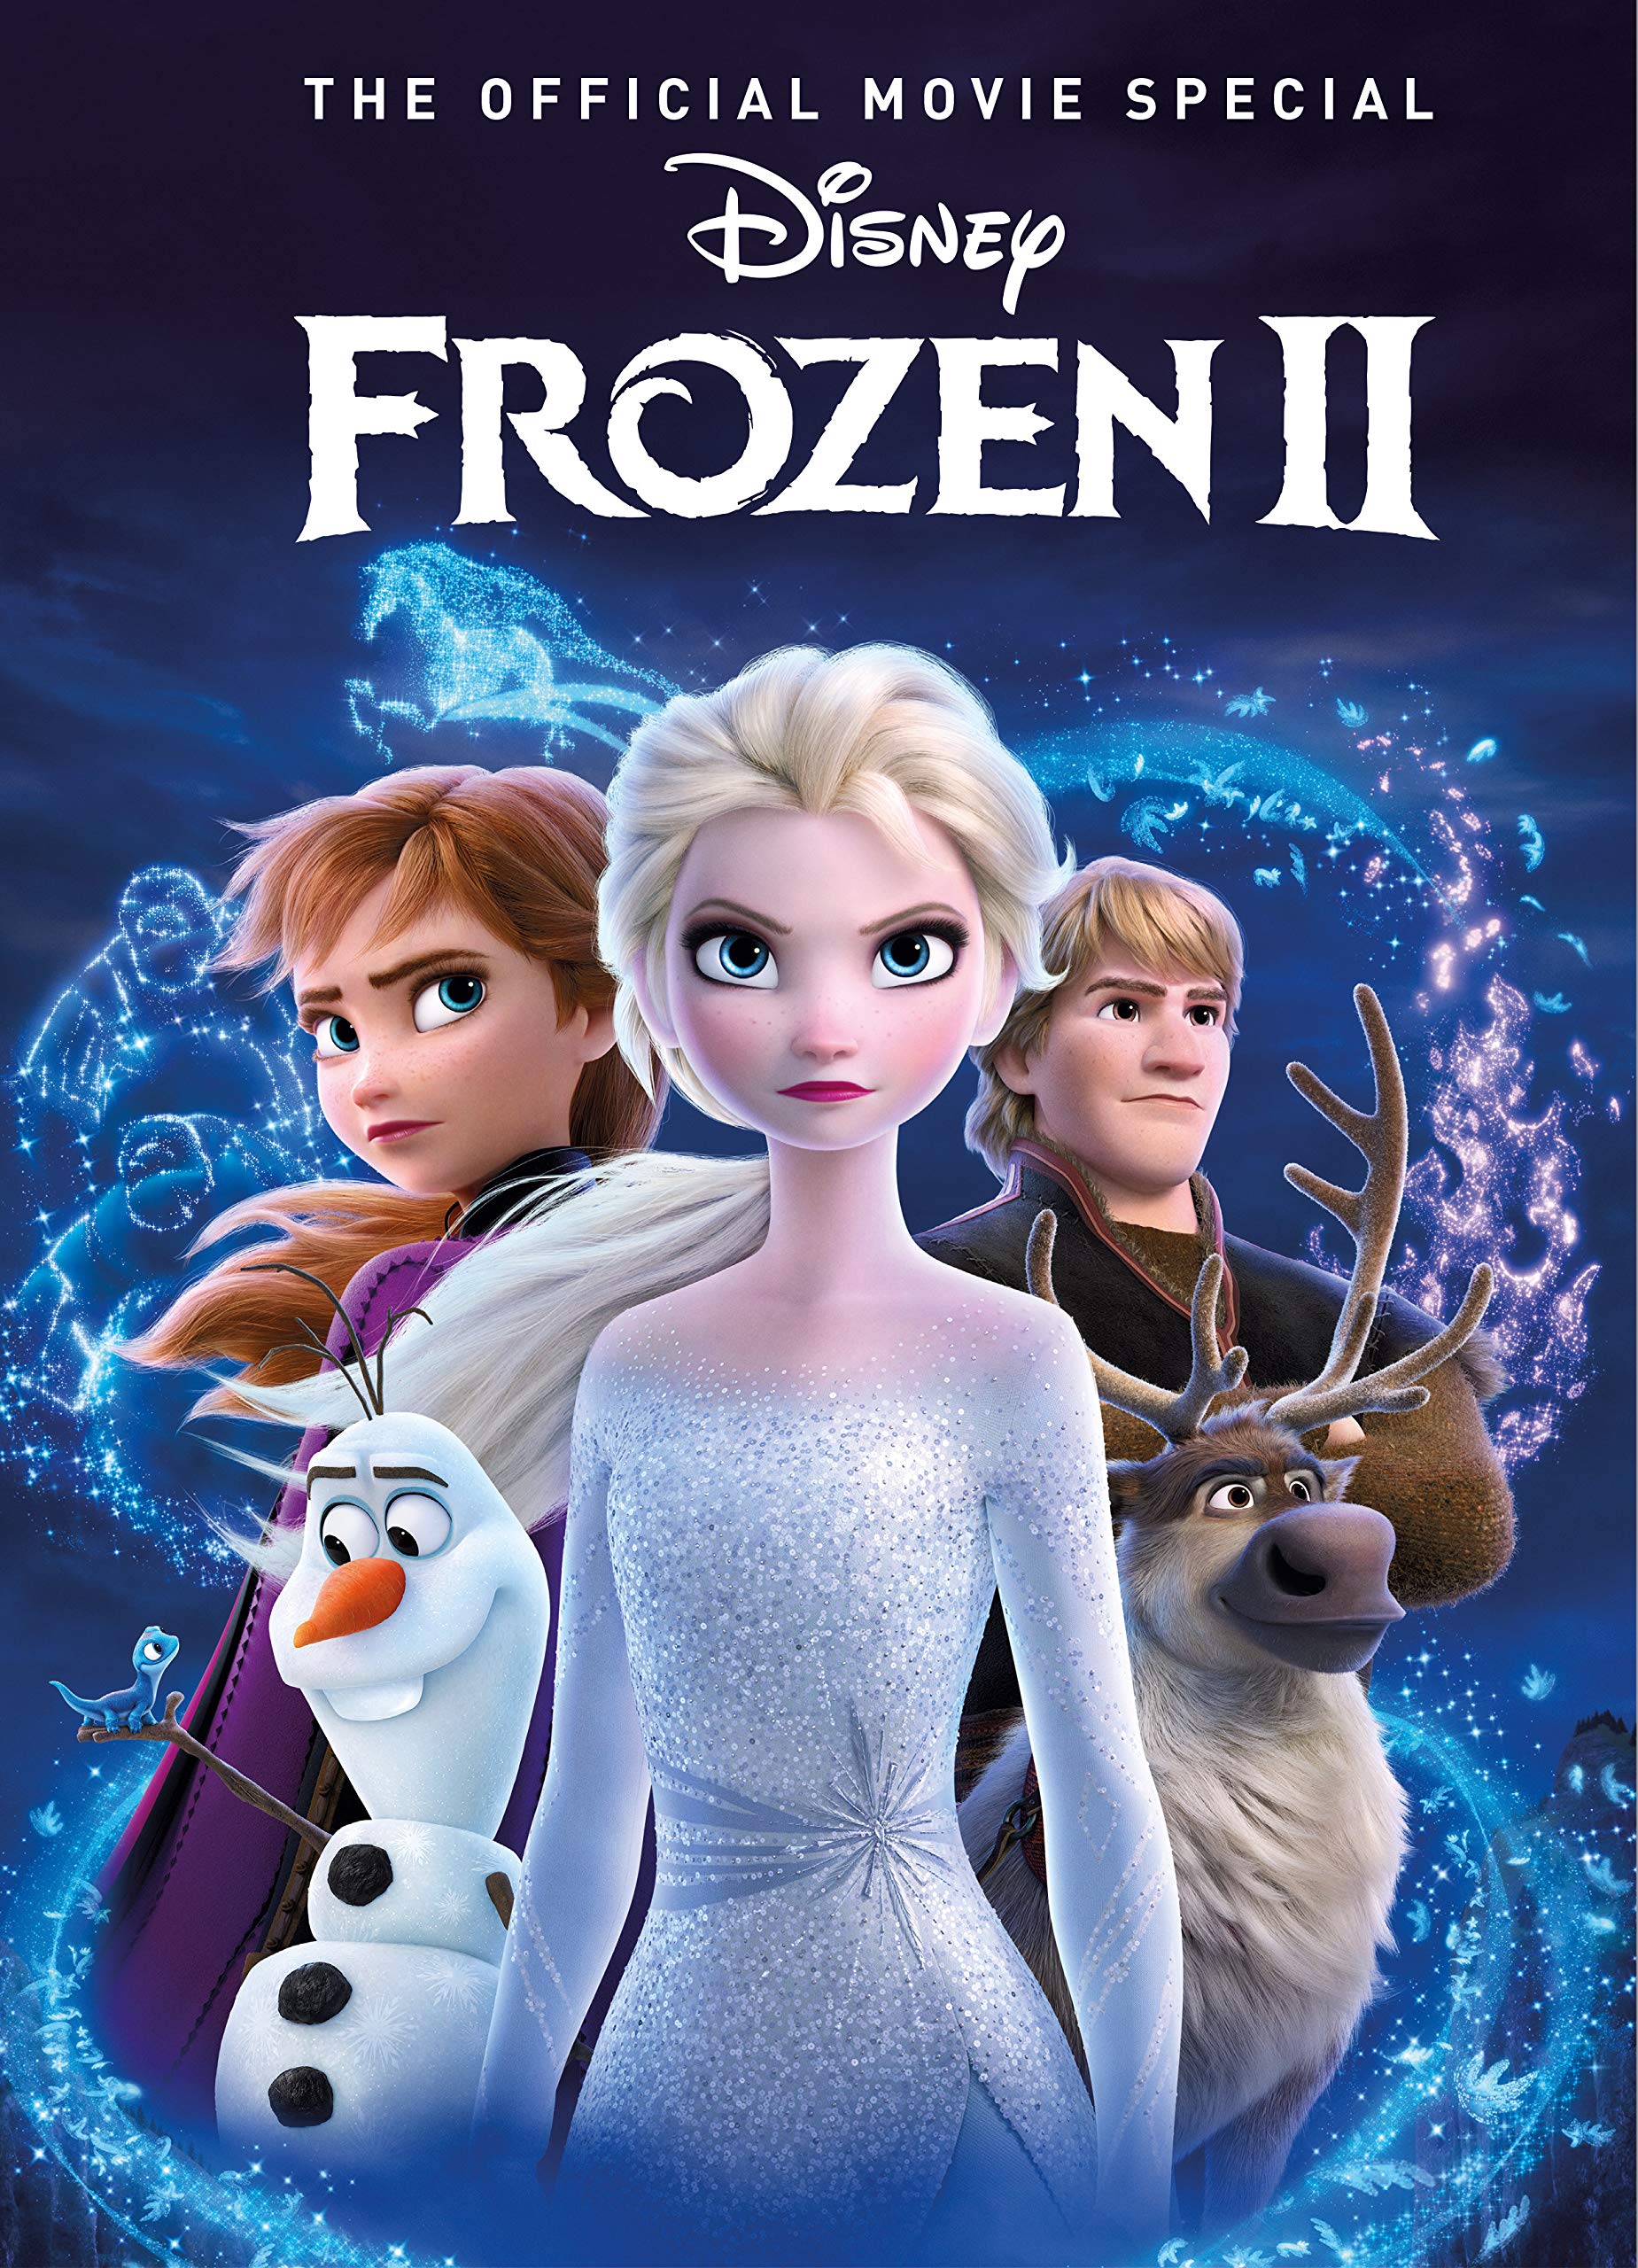 دانلود انیمیشن یخ زده ۲ (فروزن ۲) با دوبله فارسی Frozen 2 2019 UHD BluRay